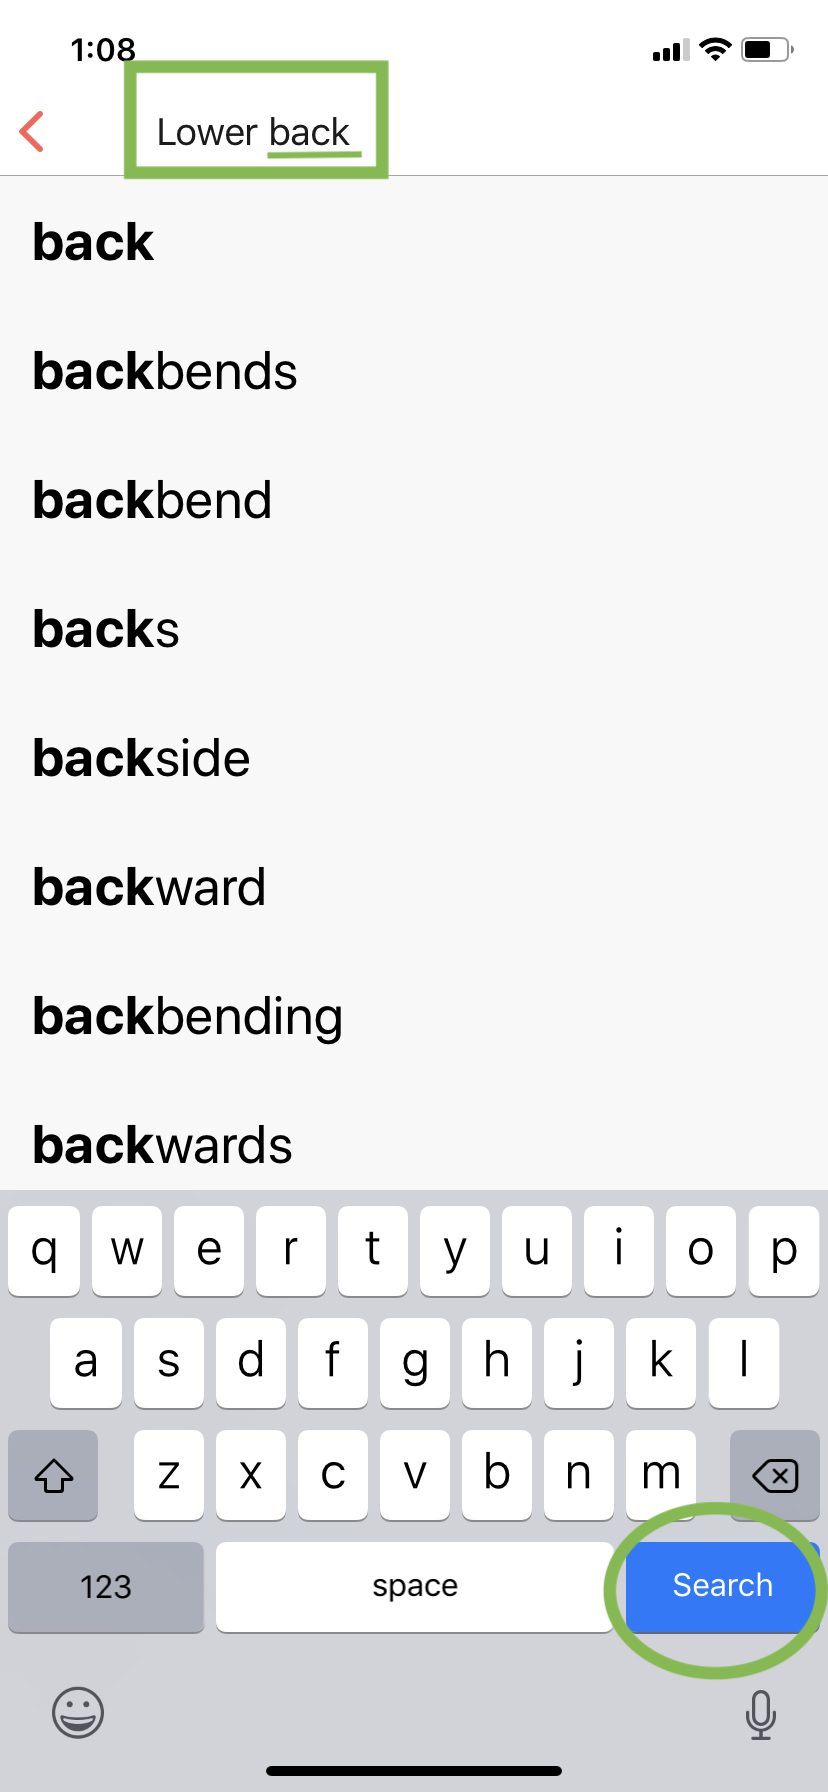 Lower_Back_Search.jpeg